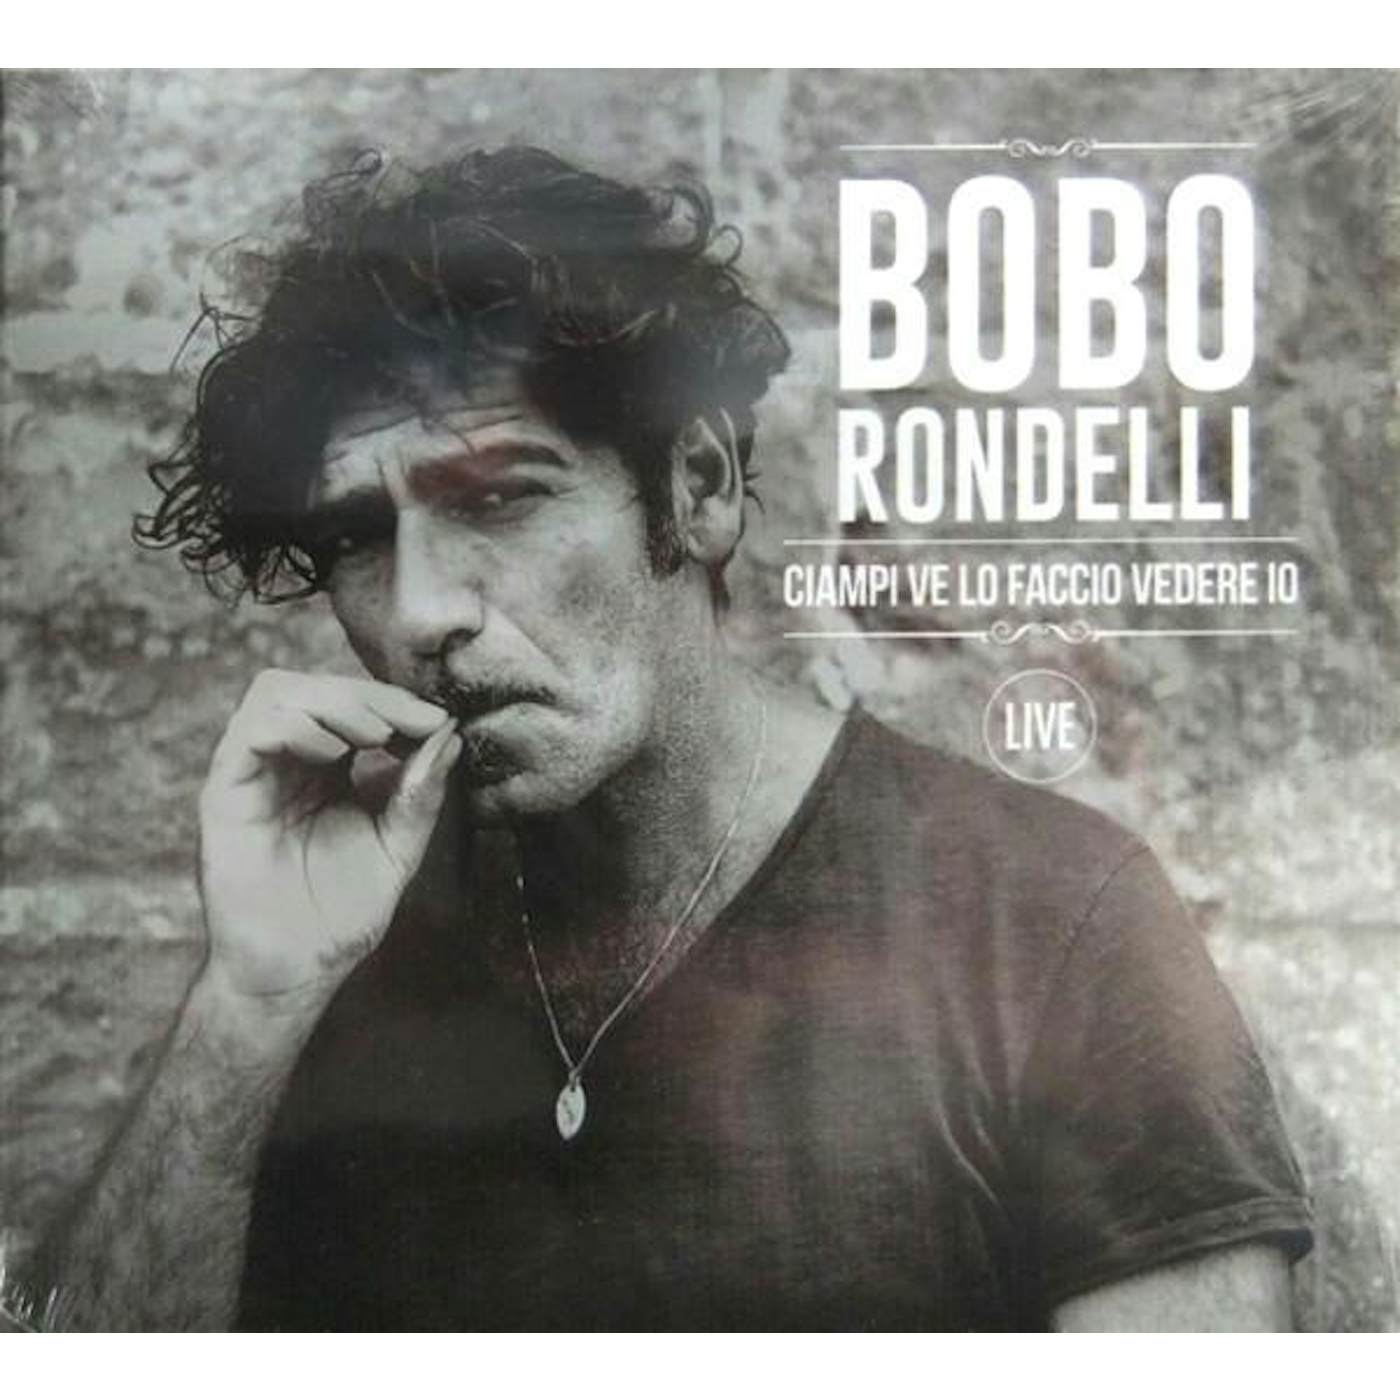 Bobo Rondelli CIAMPI VE LO FACCIO VEDERE IO LIVE CD